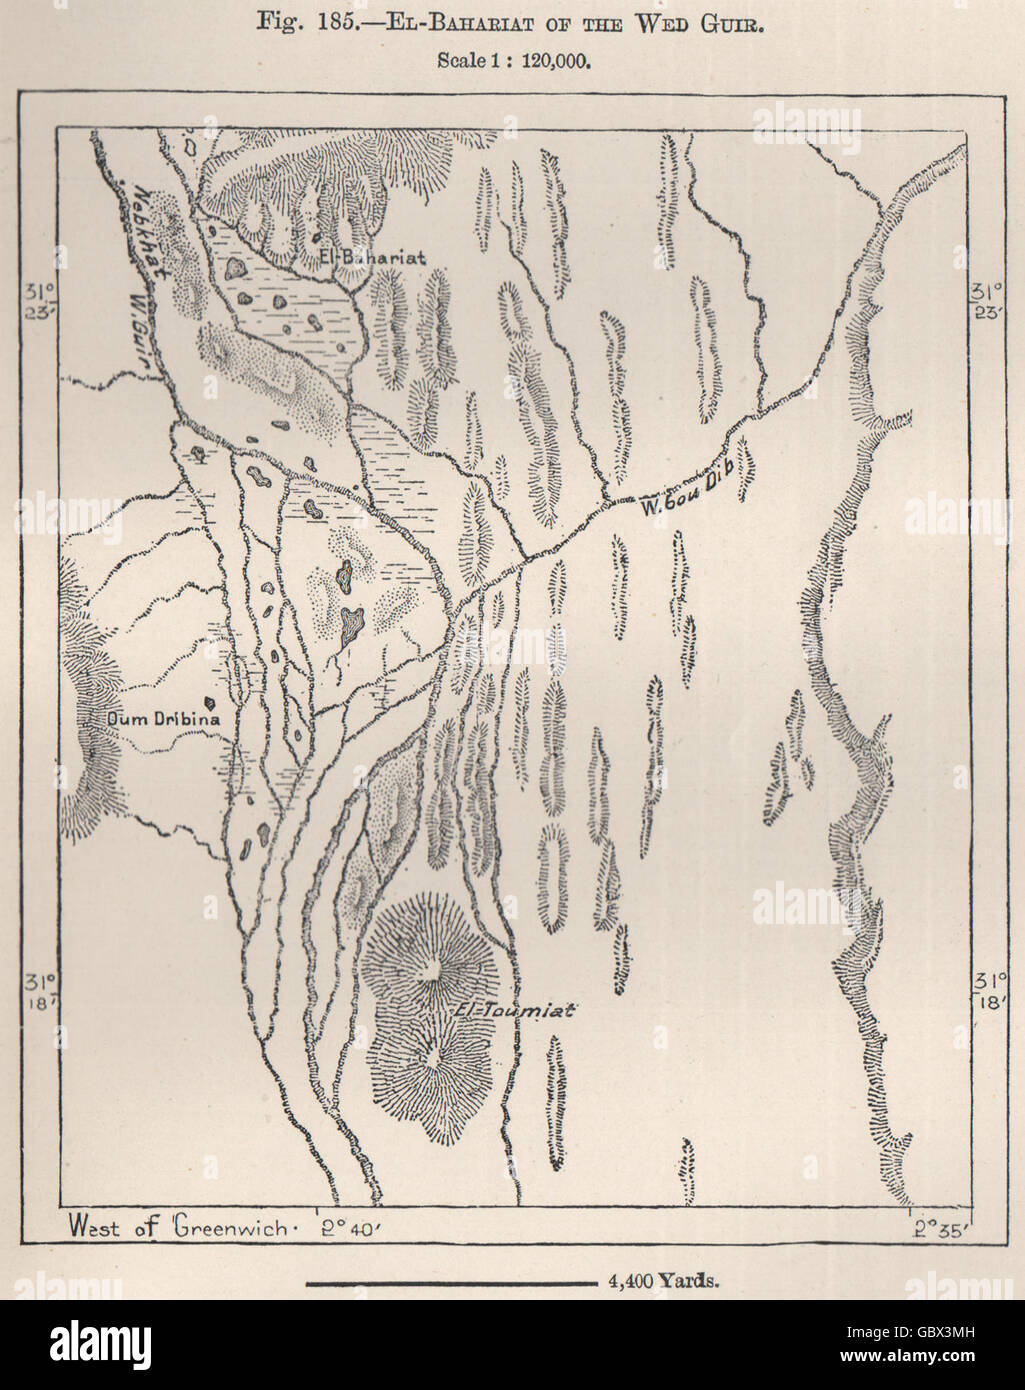 El-Bahariat der Mi-Guir (Oued Ghir). Algerien, 1885 Antike Landkarte Stockfoto